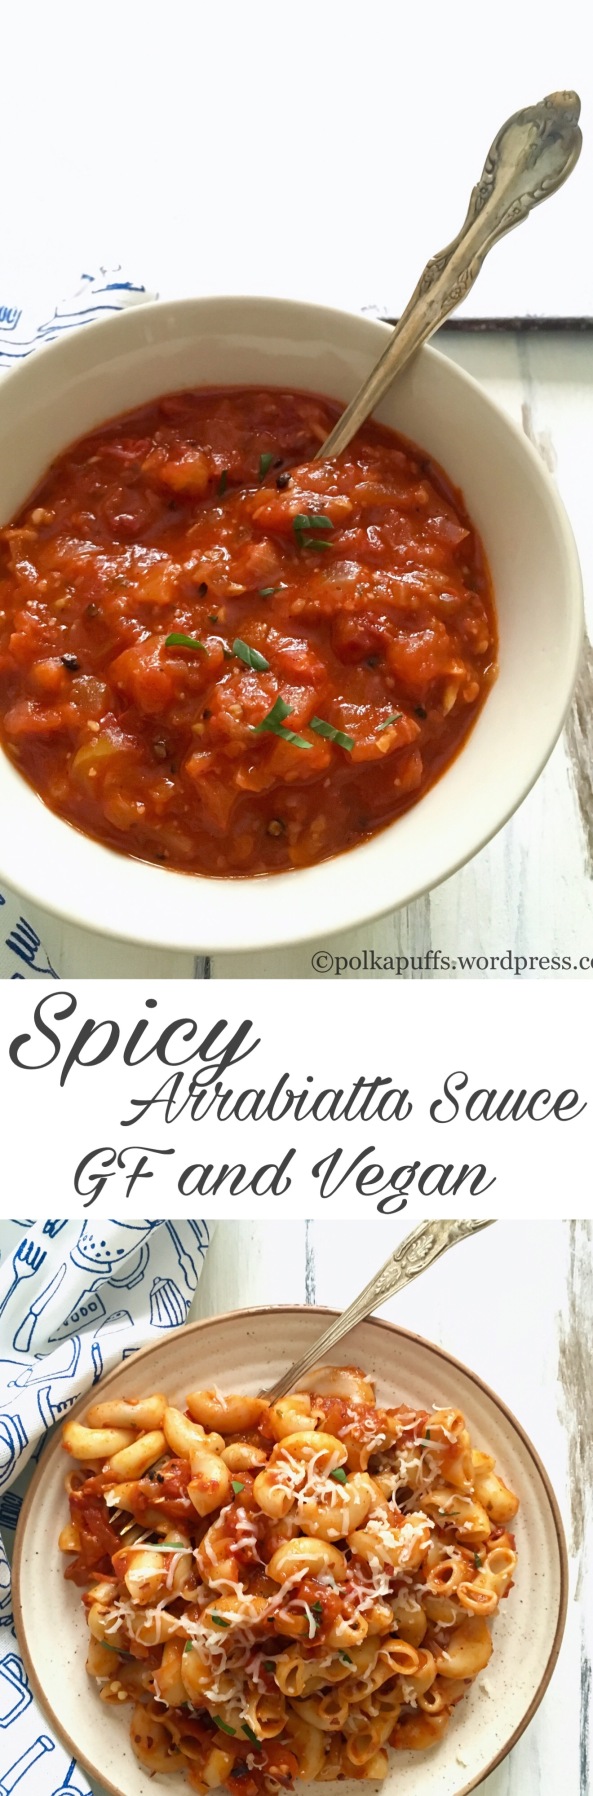 Spicy Arrabbiata Sauce Glutenfree and Vegan